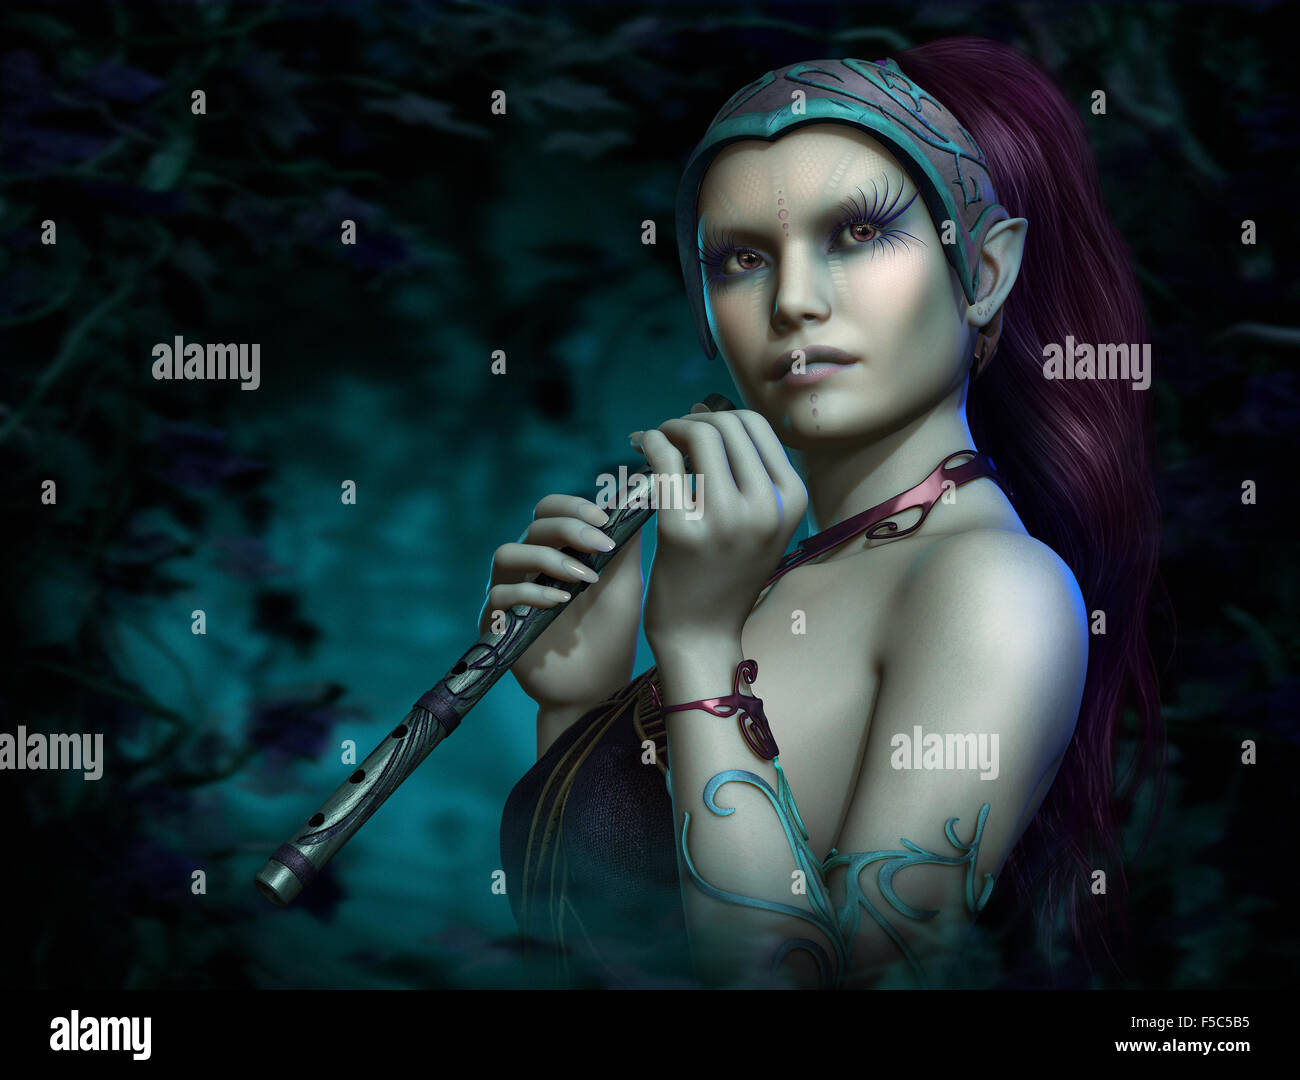 L'infographie 3d d'une fée bleue avec une flûte Banque D'Images